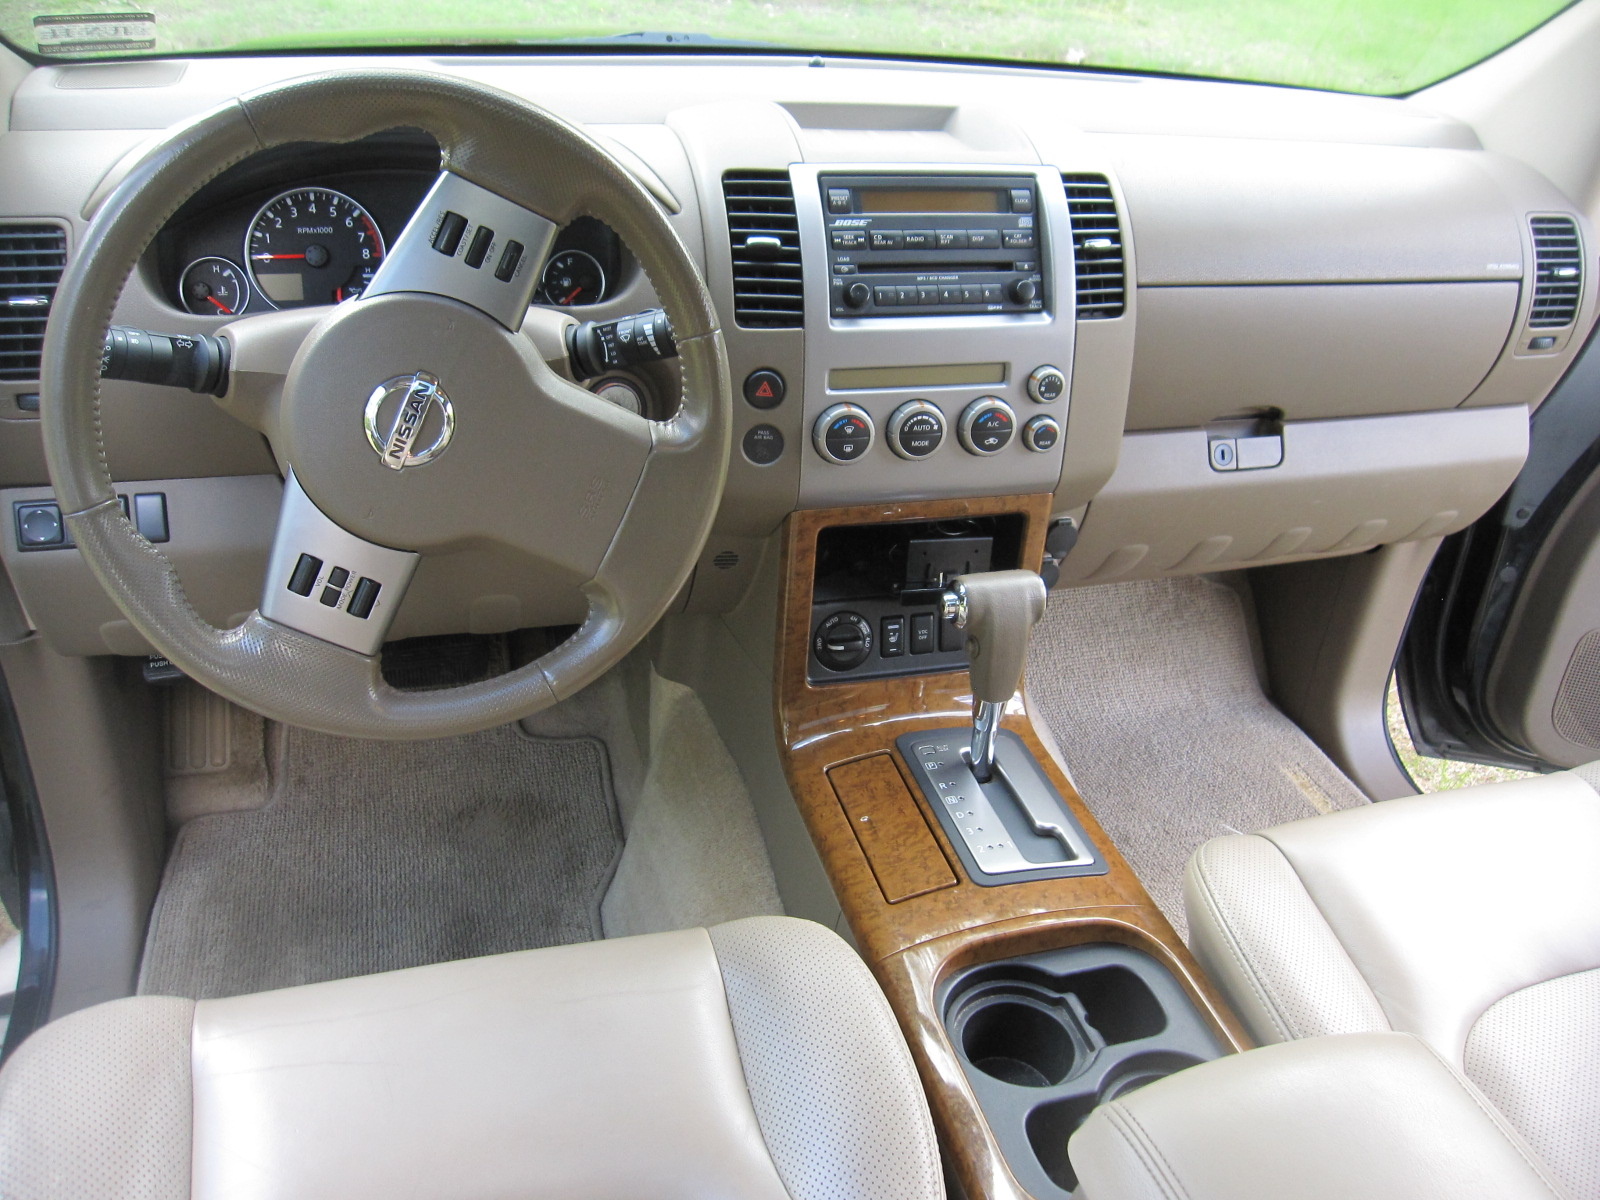 2005 Nissan pathfinder seats